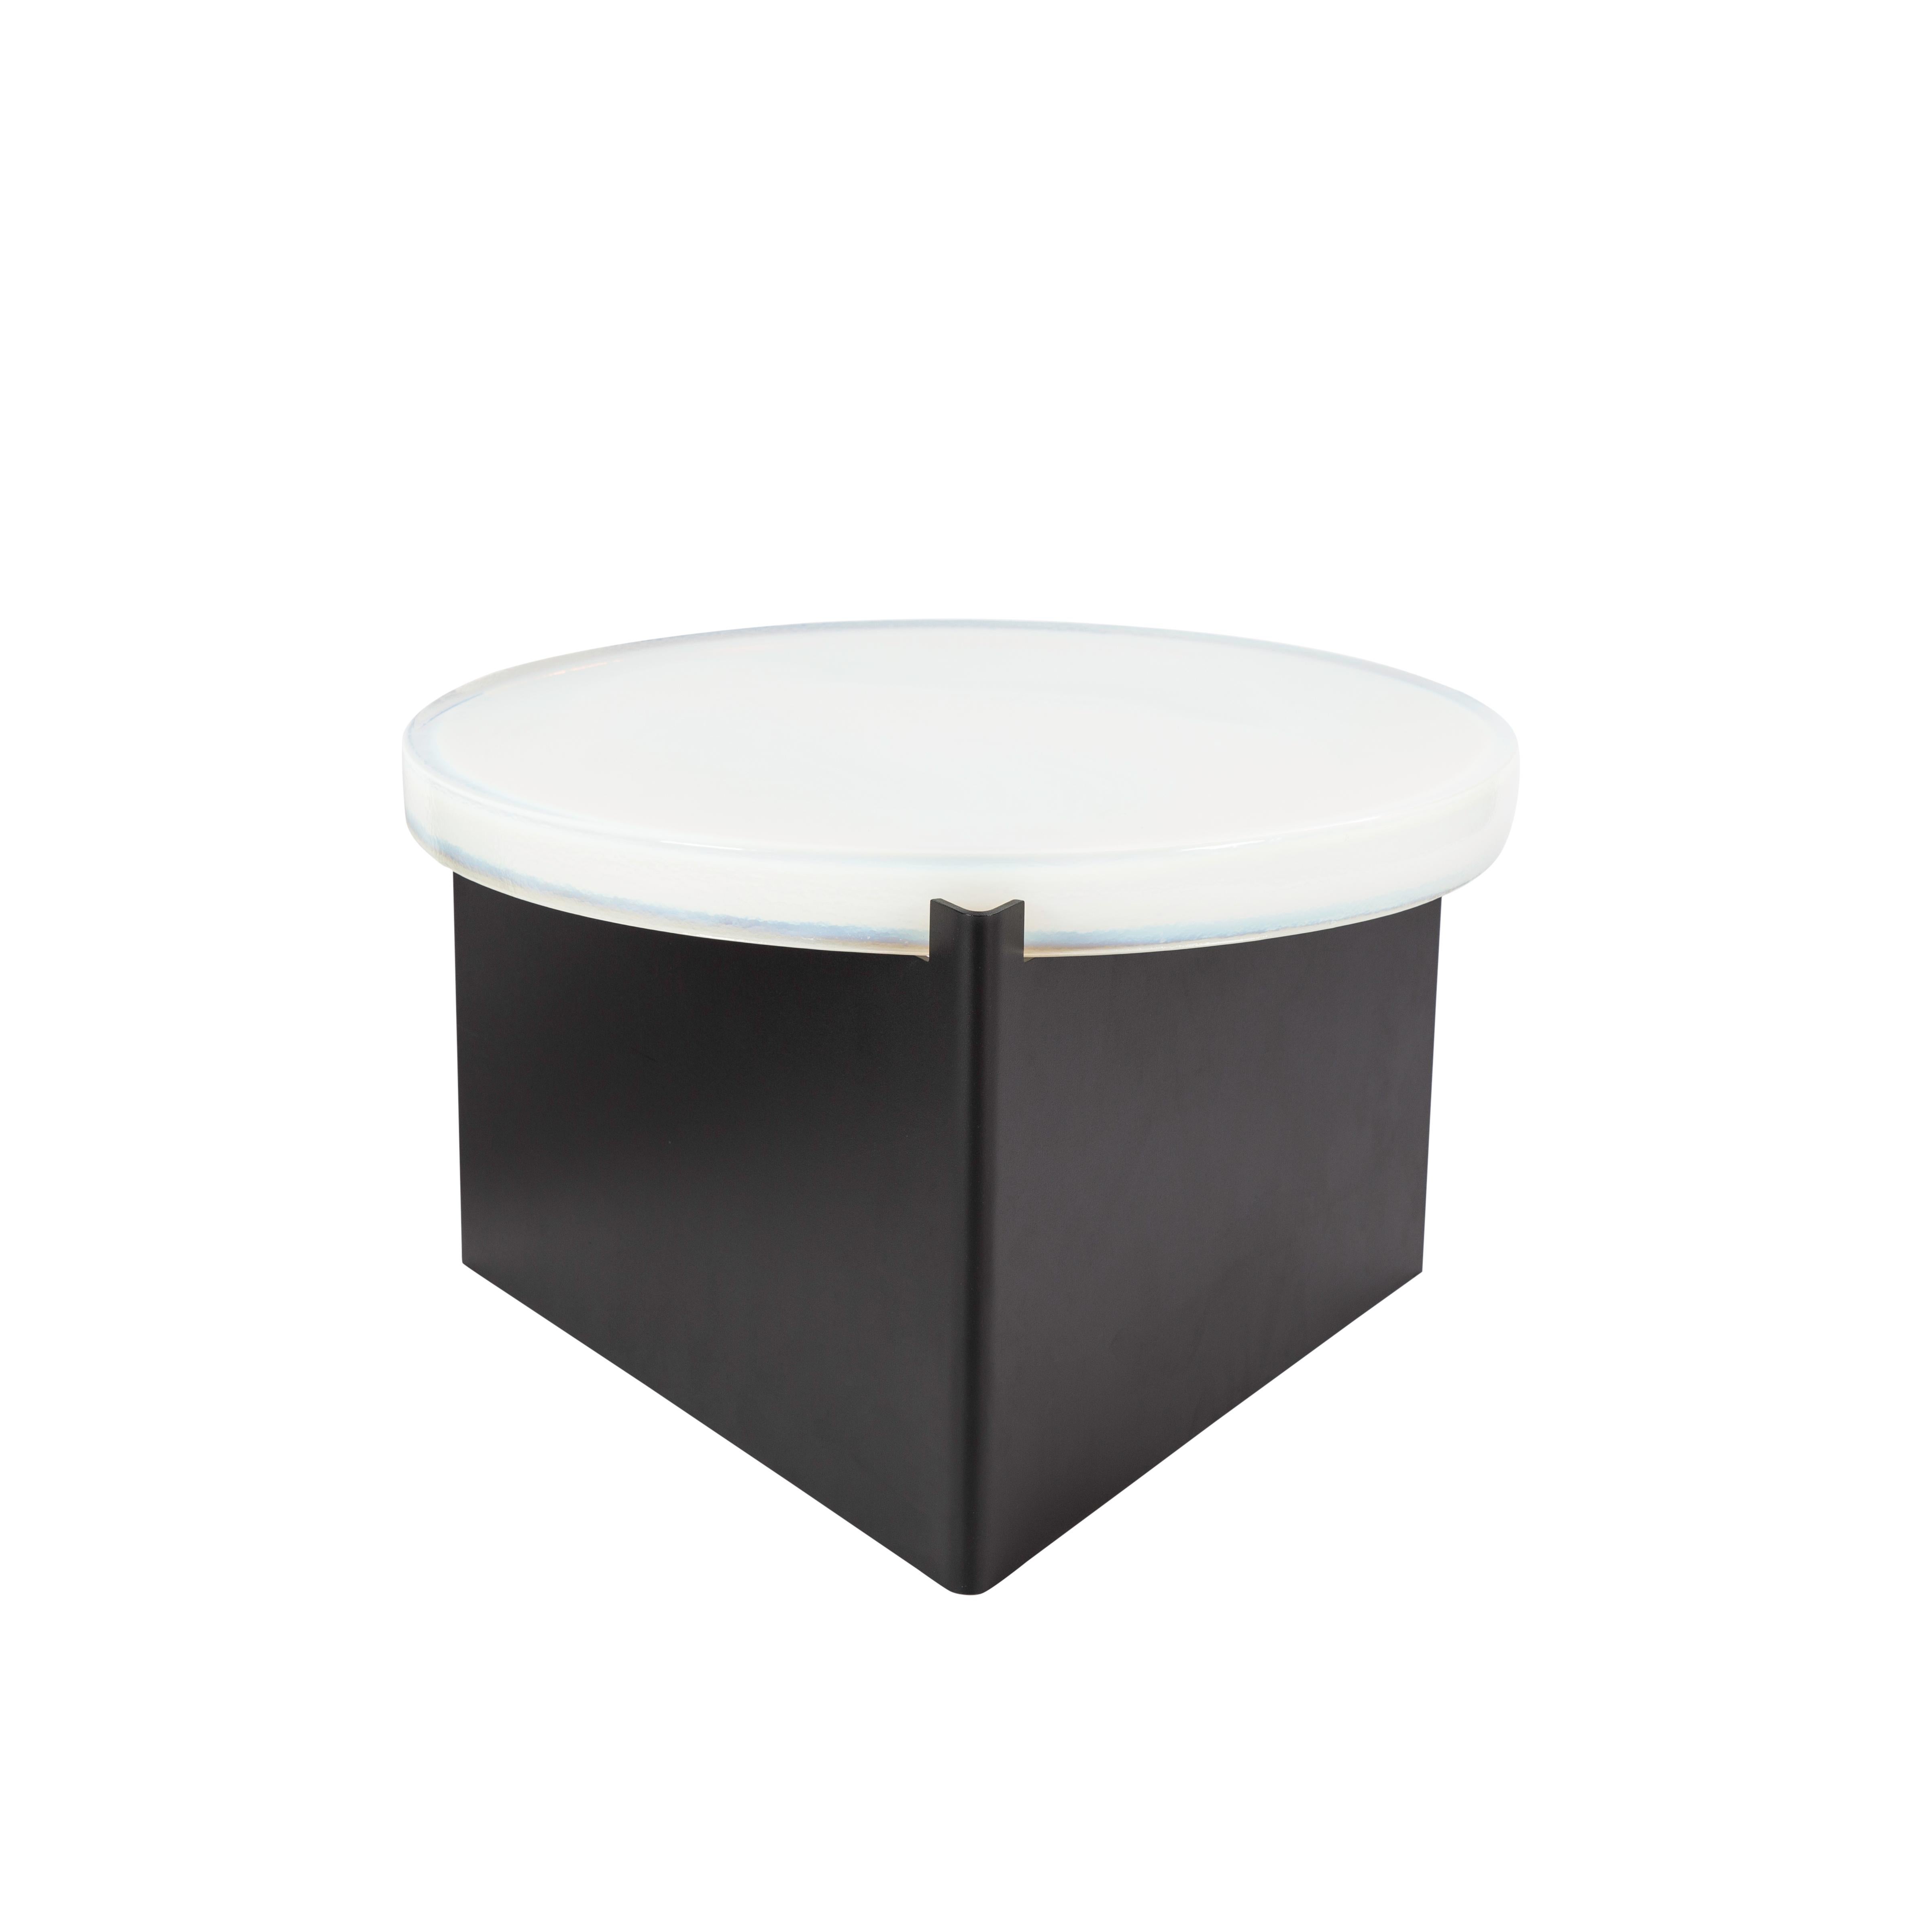 Bigli une grande table basse blanche et noire par Pulpo
Dimensions : D56 x H35 cm
MATERIAL : verre coulé ; acier revêtu de poudre. 

Disponible également en différentes finitions. 

Normalement, le verre est considéré comme un matériau léger aux